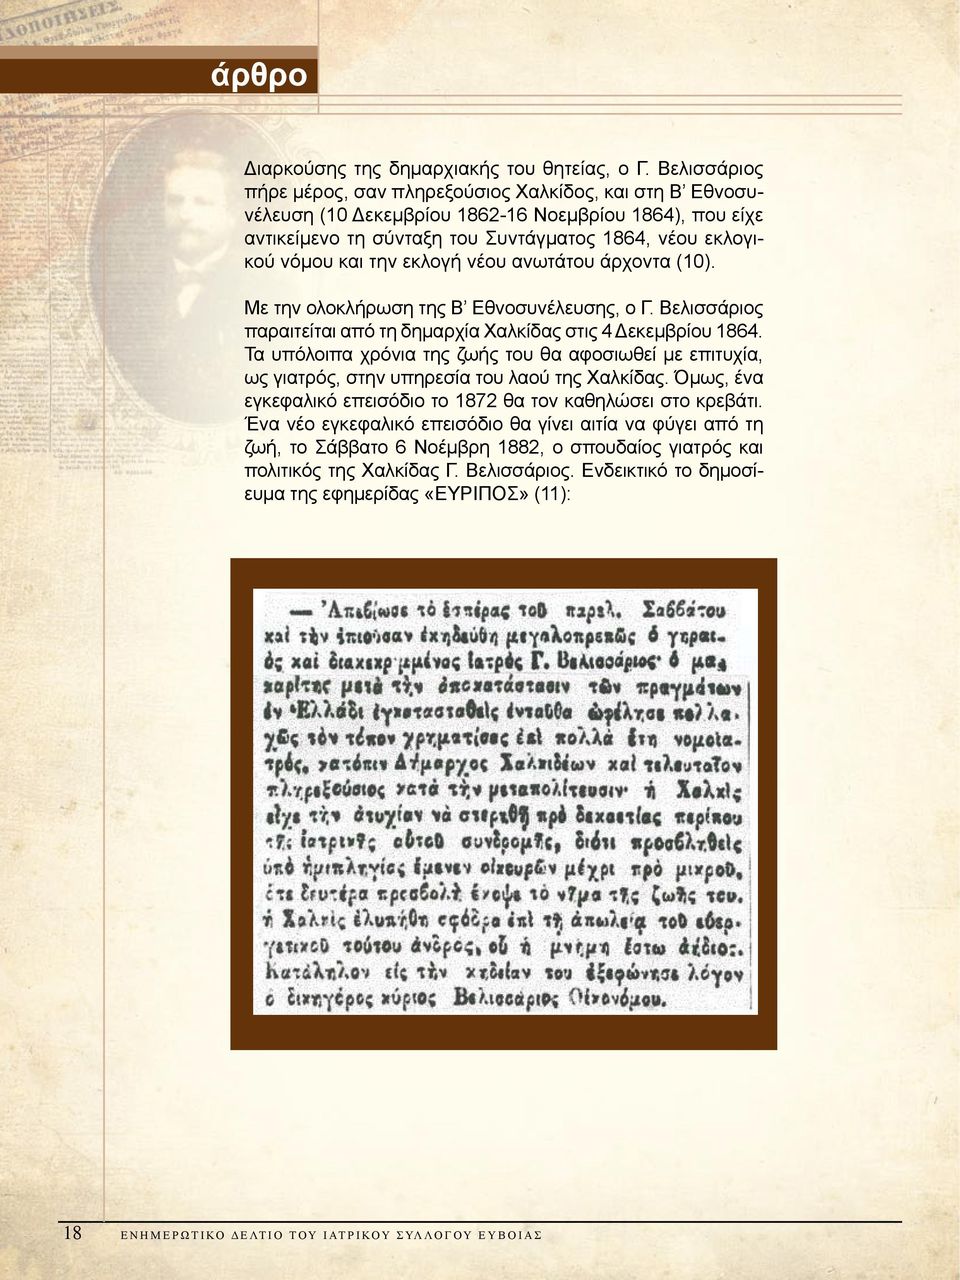 εκλογή νέου ανωτάτου άρχοντα (10). Με την ολοκλήρωση της Β Εθνοσυνέλευσης, ο Γ. Βελισσάριος παραιτείται από τη δημαρχία Χαλκίδας στις 4 Δεκεμβρίου 1864.